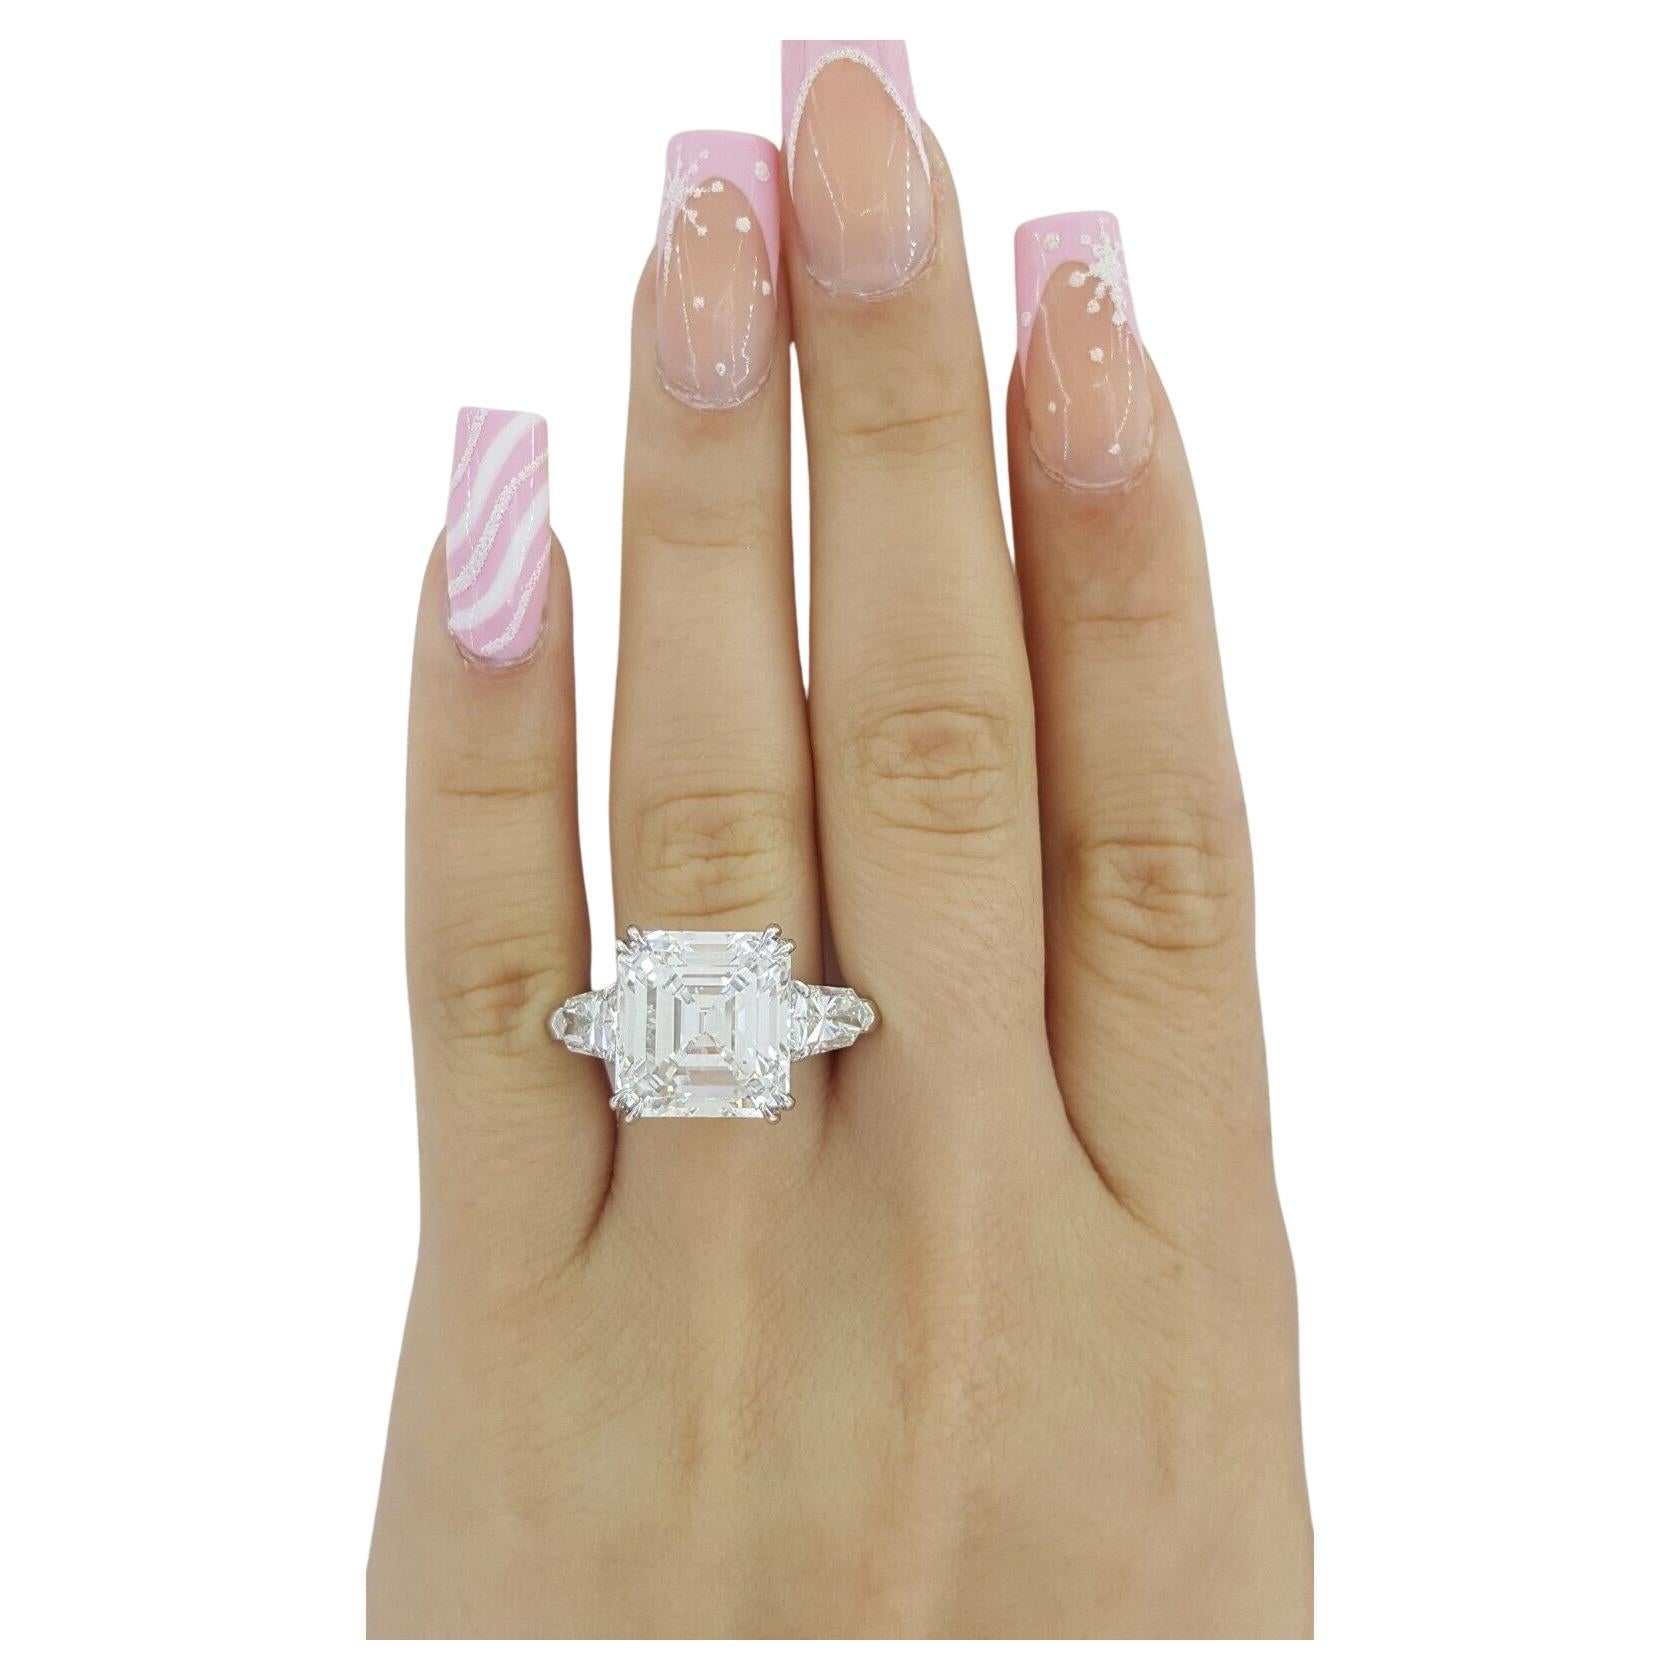 10 carat asscher cut diamond ring